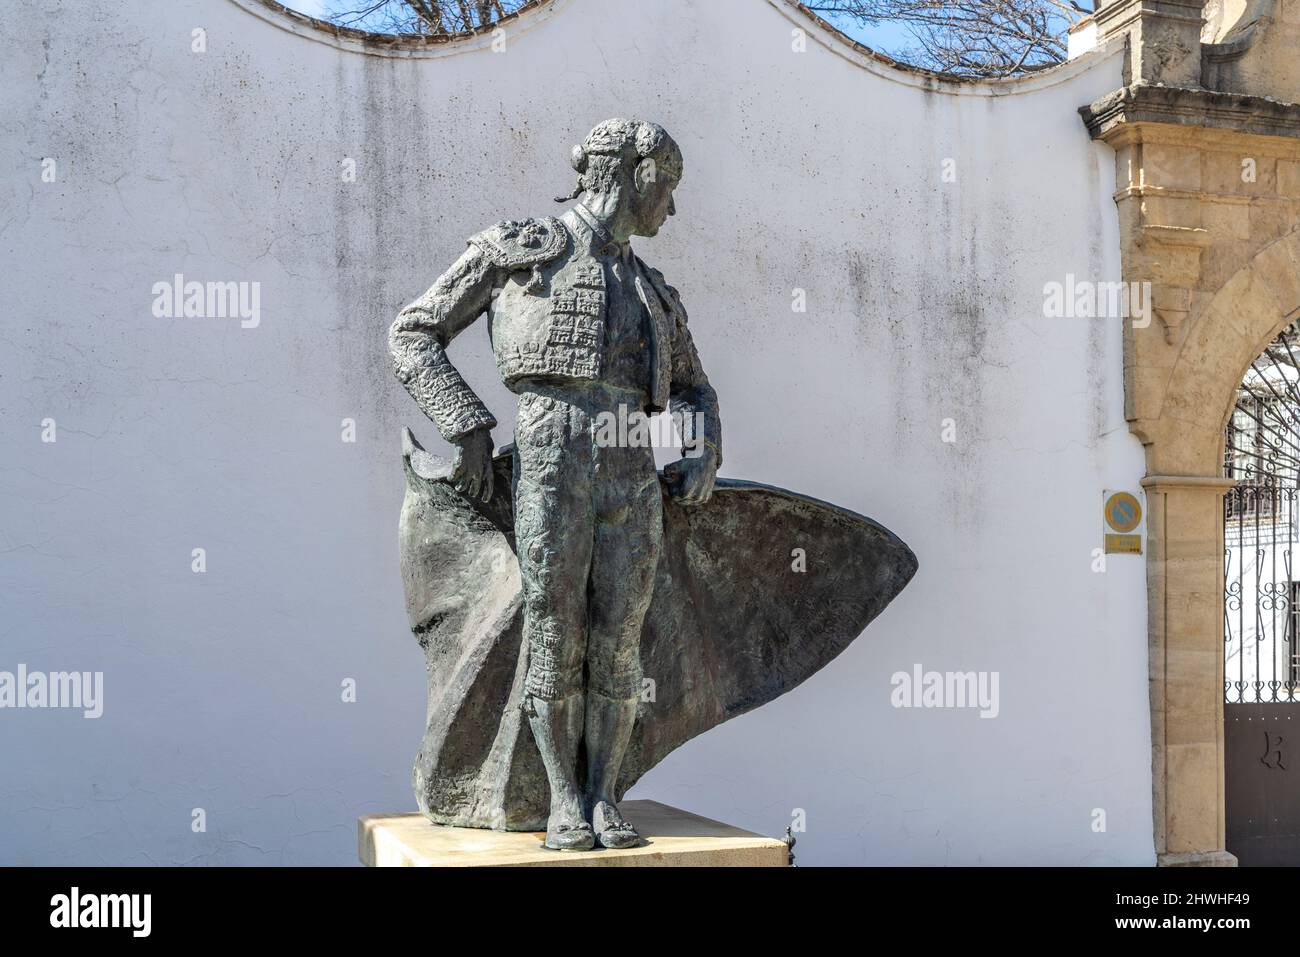 Statue de Torero Cayetano Ordonez, Ronda, Andalusien, Espagnol | Statue de Matador Cayetano Ordonez, Ronda, Andalousie, Espagne Banque D'Images